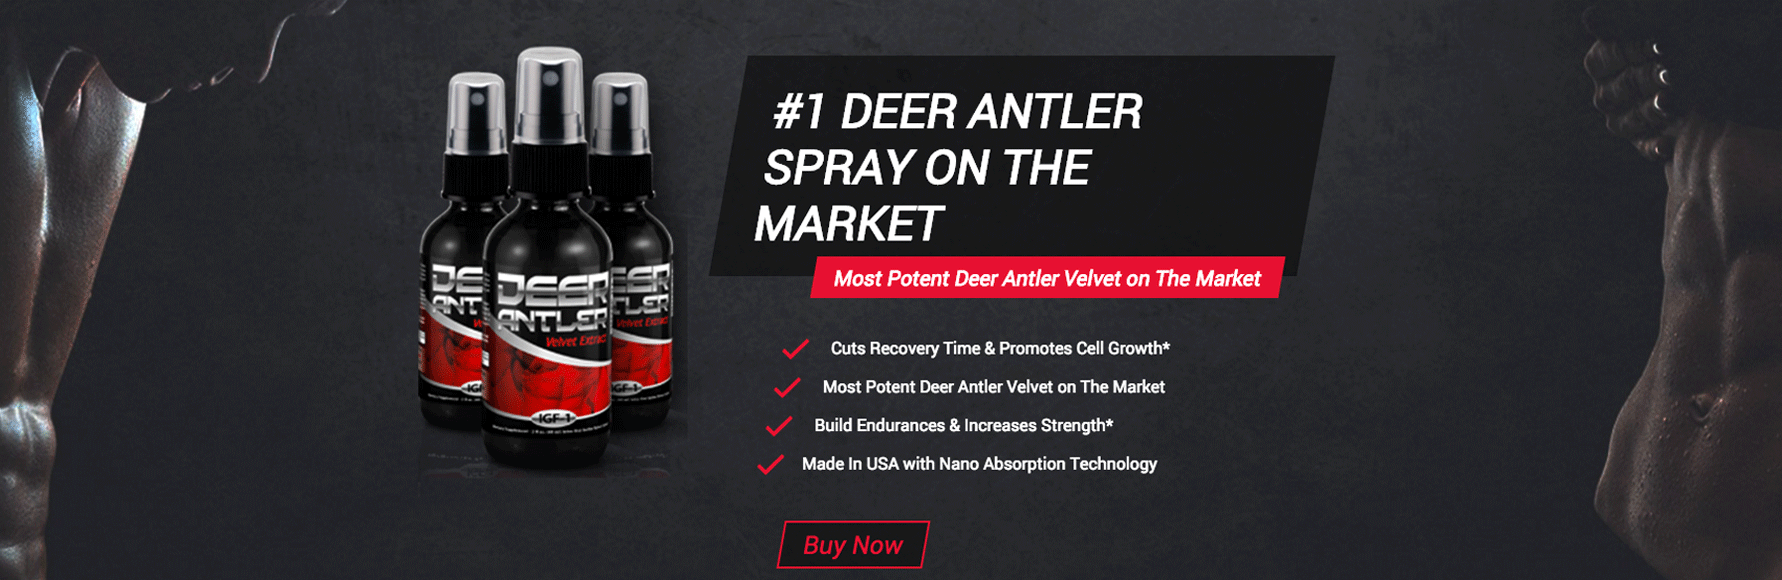 Deer Antler Spray Benefits Buckedup Com